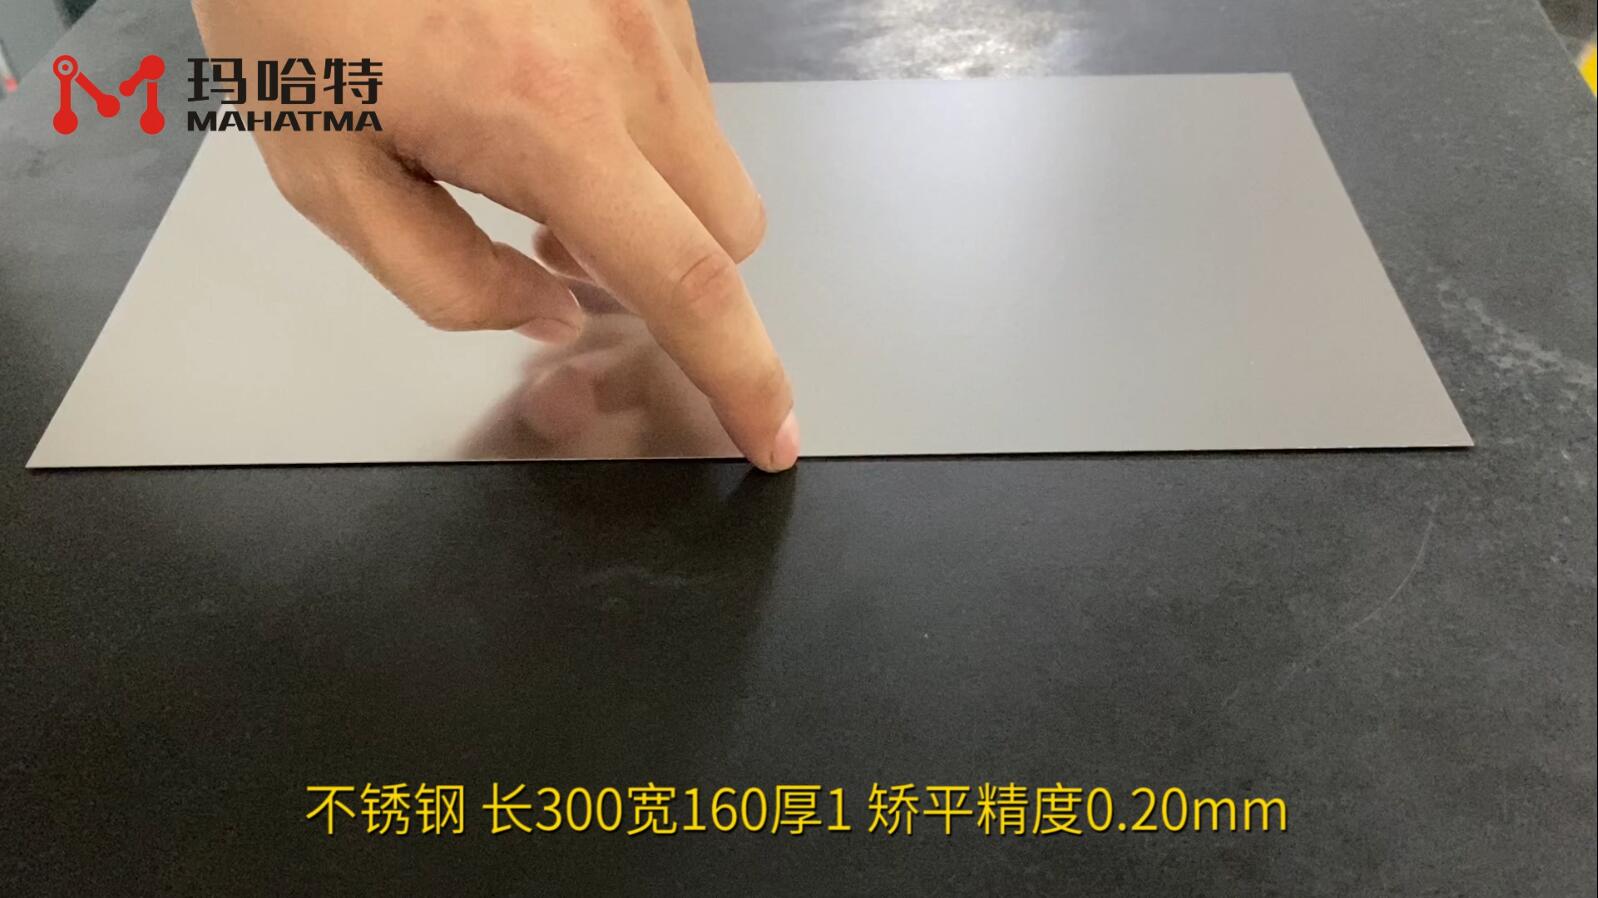 不锈钢 MHT20-600 长方形 长300宽160厚1 矫平精度0.20mm